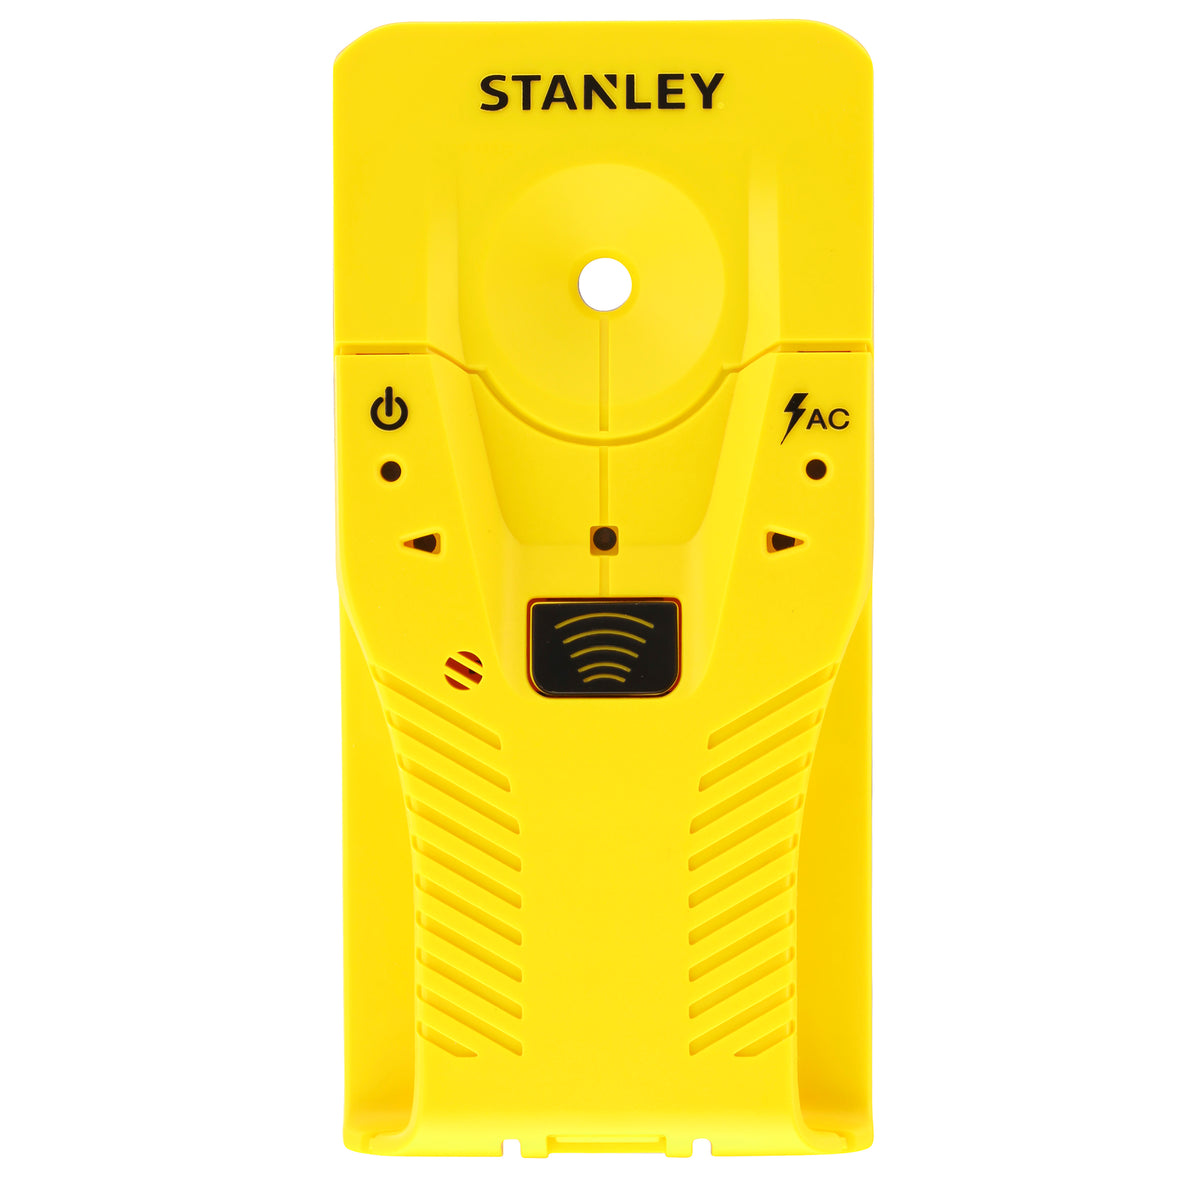 Stanley materiaal detector S110